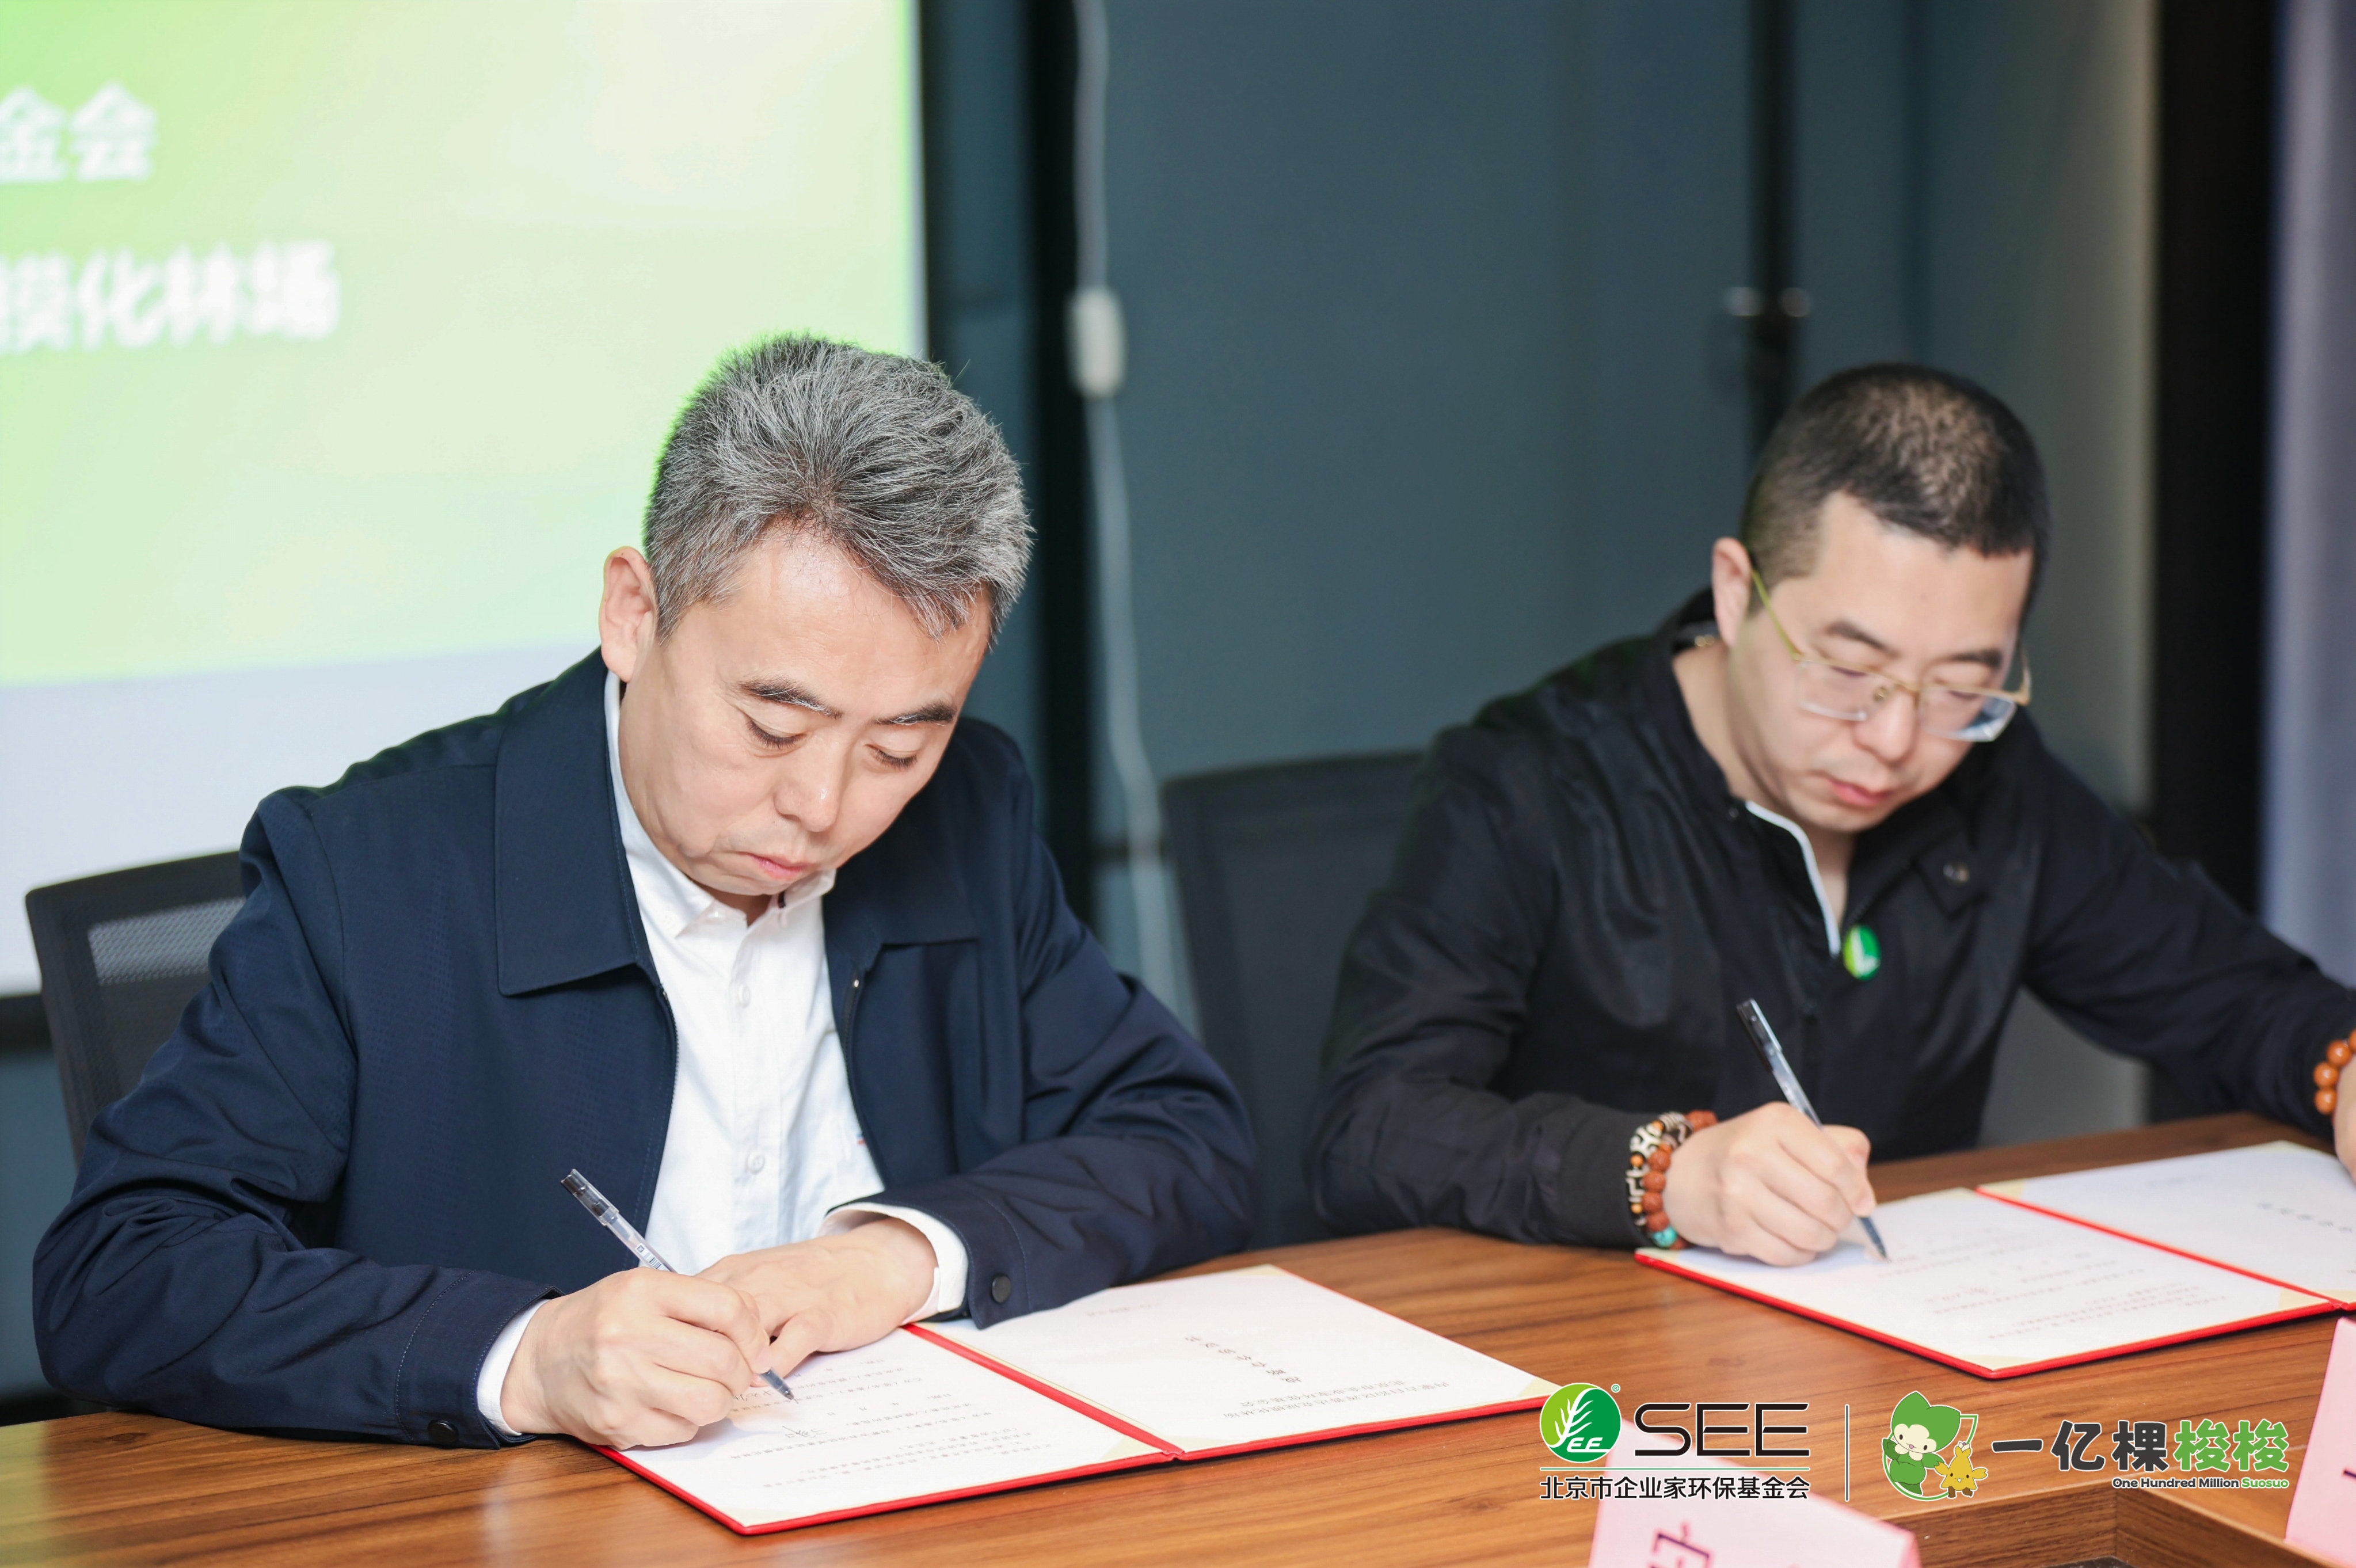 SEE基金会与内蒙古自治区浑善达克规模化林场正式签署战略合作协议